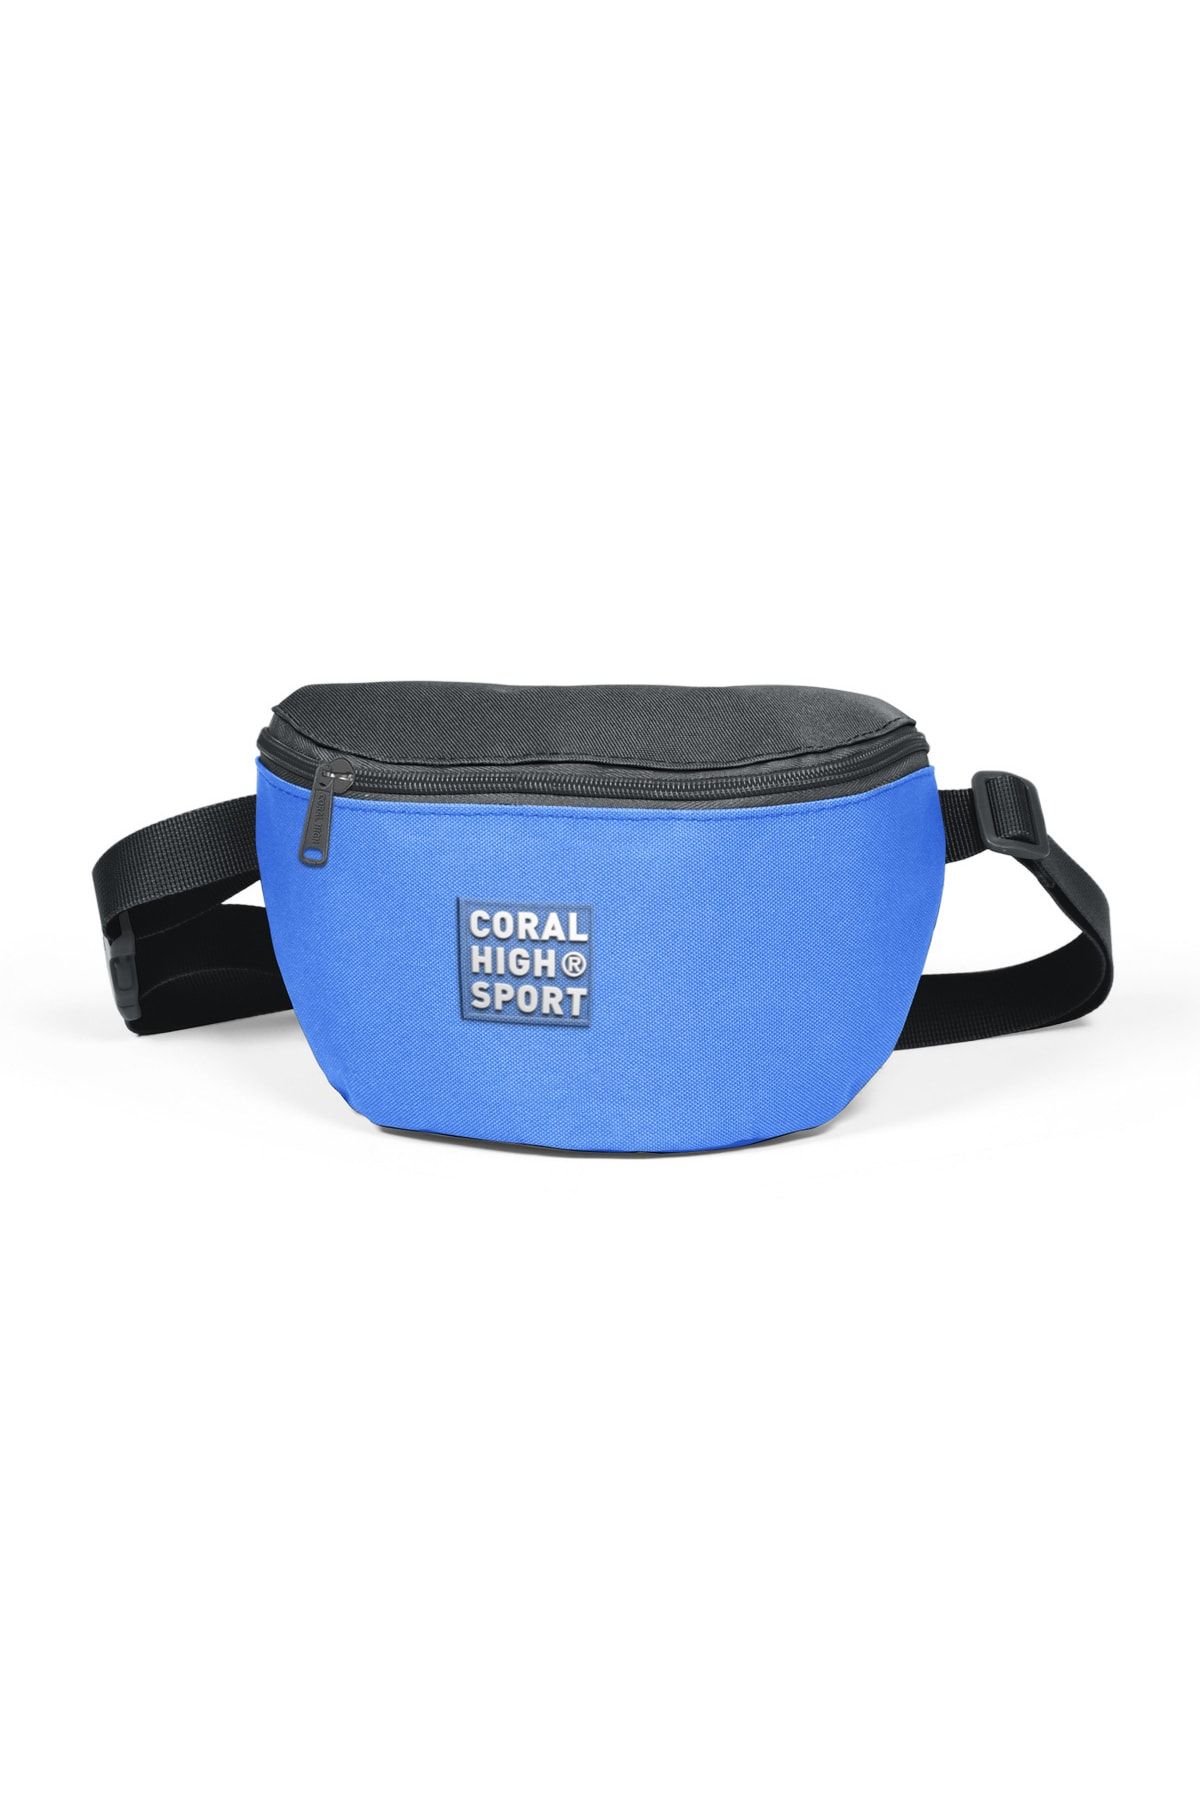 Coral High Sport Derin Mavi Koyu Gri Iki Bölmeli Bel Çantası 22621